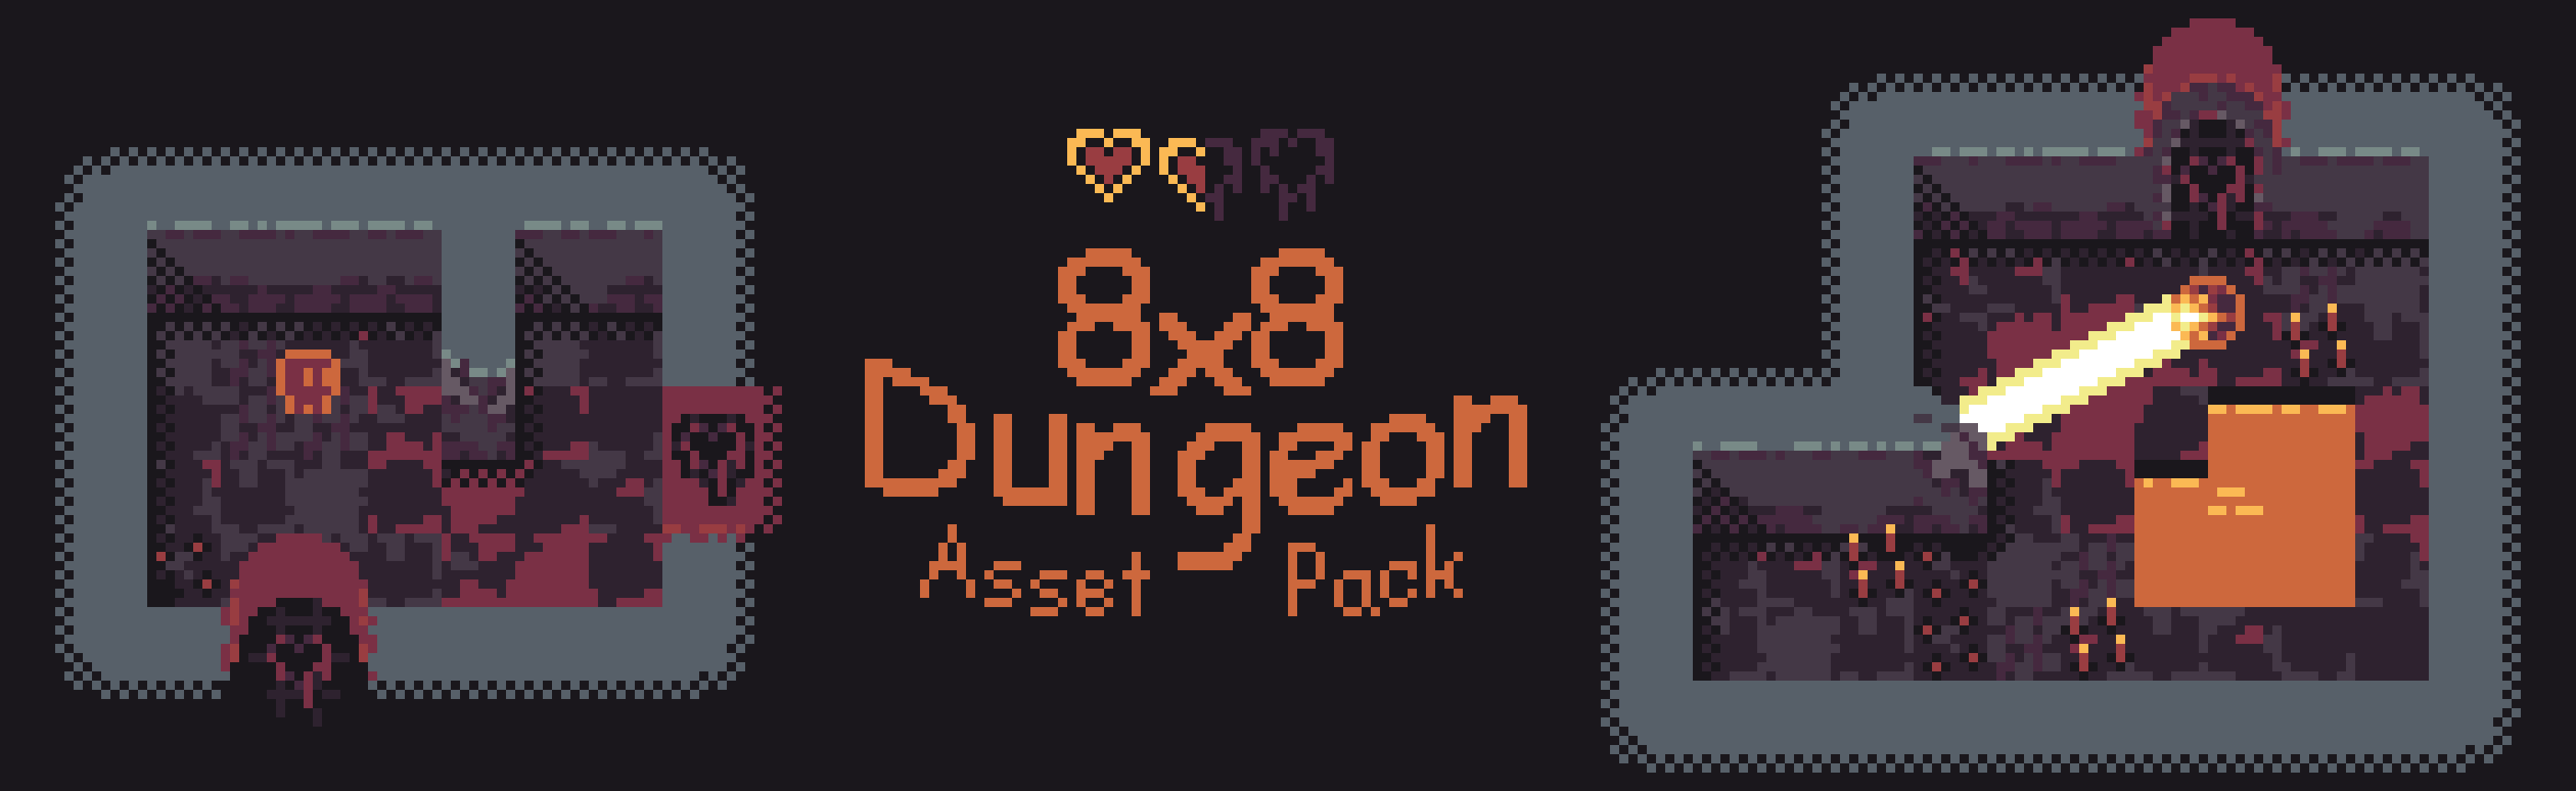 8x8 Dungeon Asset Pack